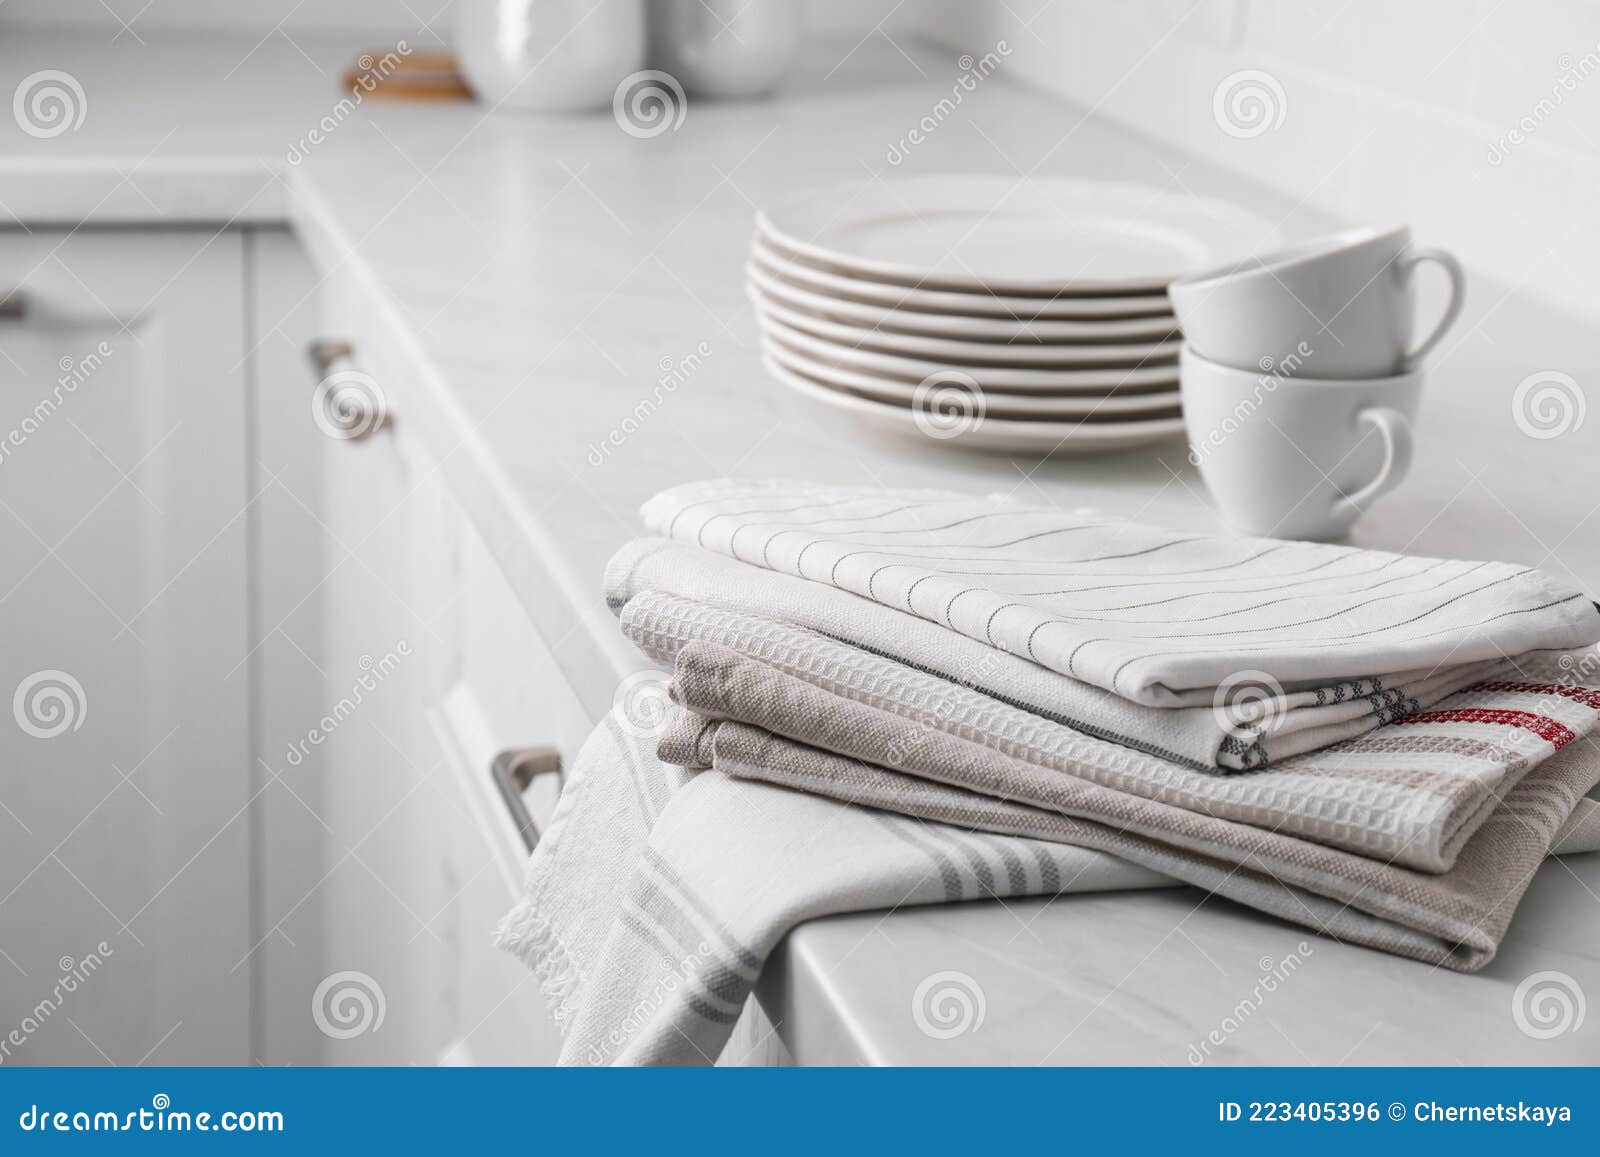 https://thumbs.dreamstime.com/z/pile-de-serviettes-cuisine-et-vaisselle-sur-le-comptoir-espace-int%C3%A9rieur-pour-texte-chemin%C3%A9e-223405396.jpg